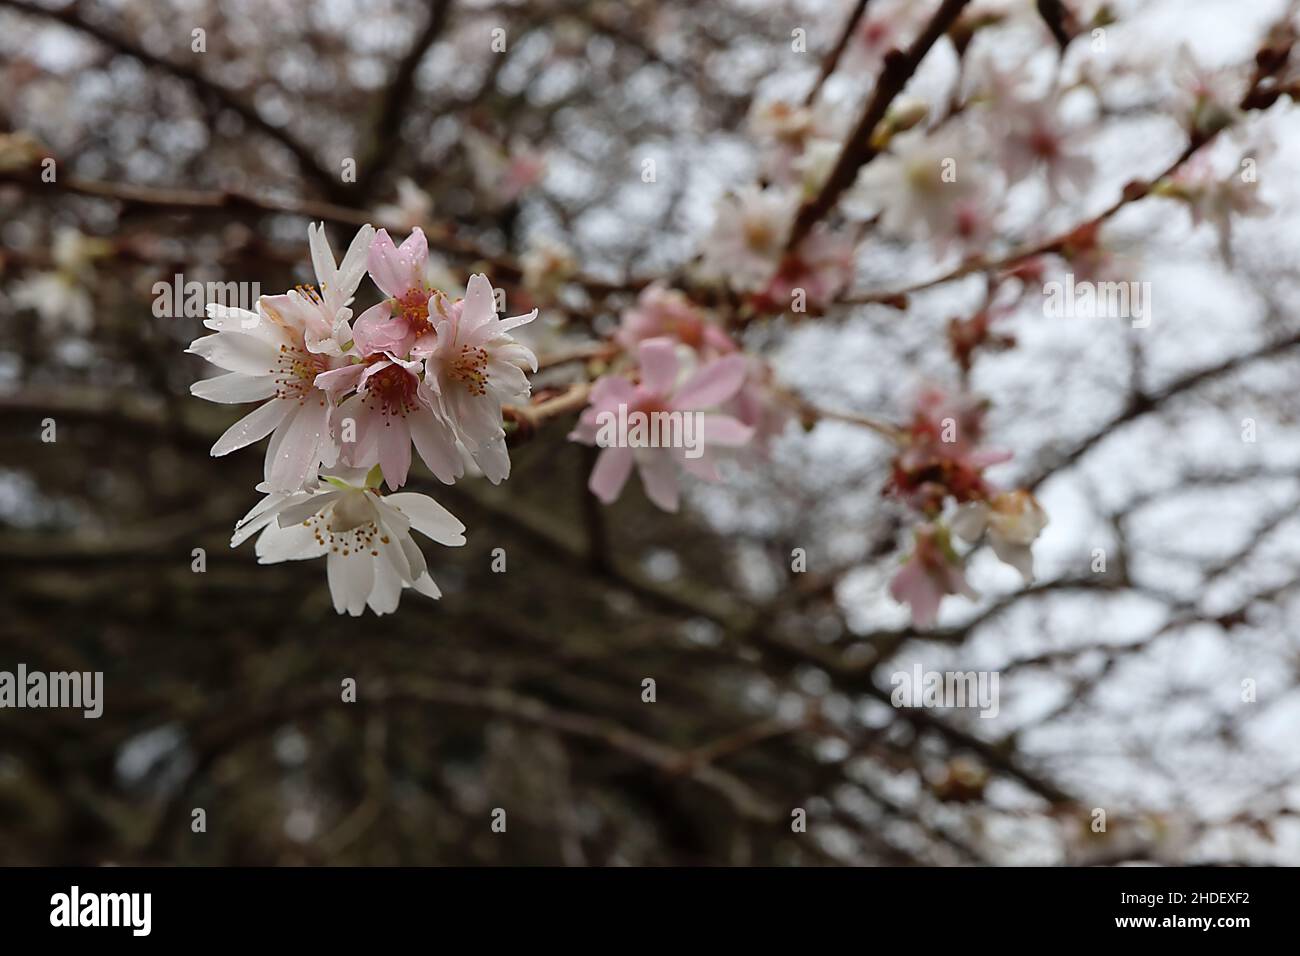 Prunus x subhirtella ‘autumnalis Rosea’ ciliegio a fiore invernale – semi-doppio guscio fiori rosa e rami nudi, gennaio, Inghilterra, Regno Unito Foto Stock